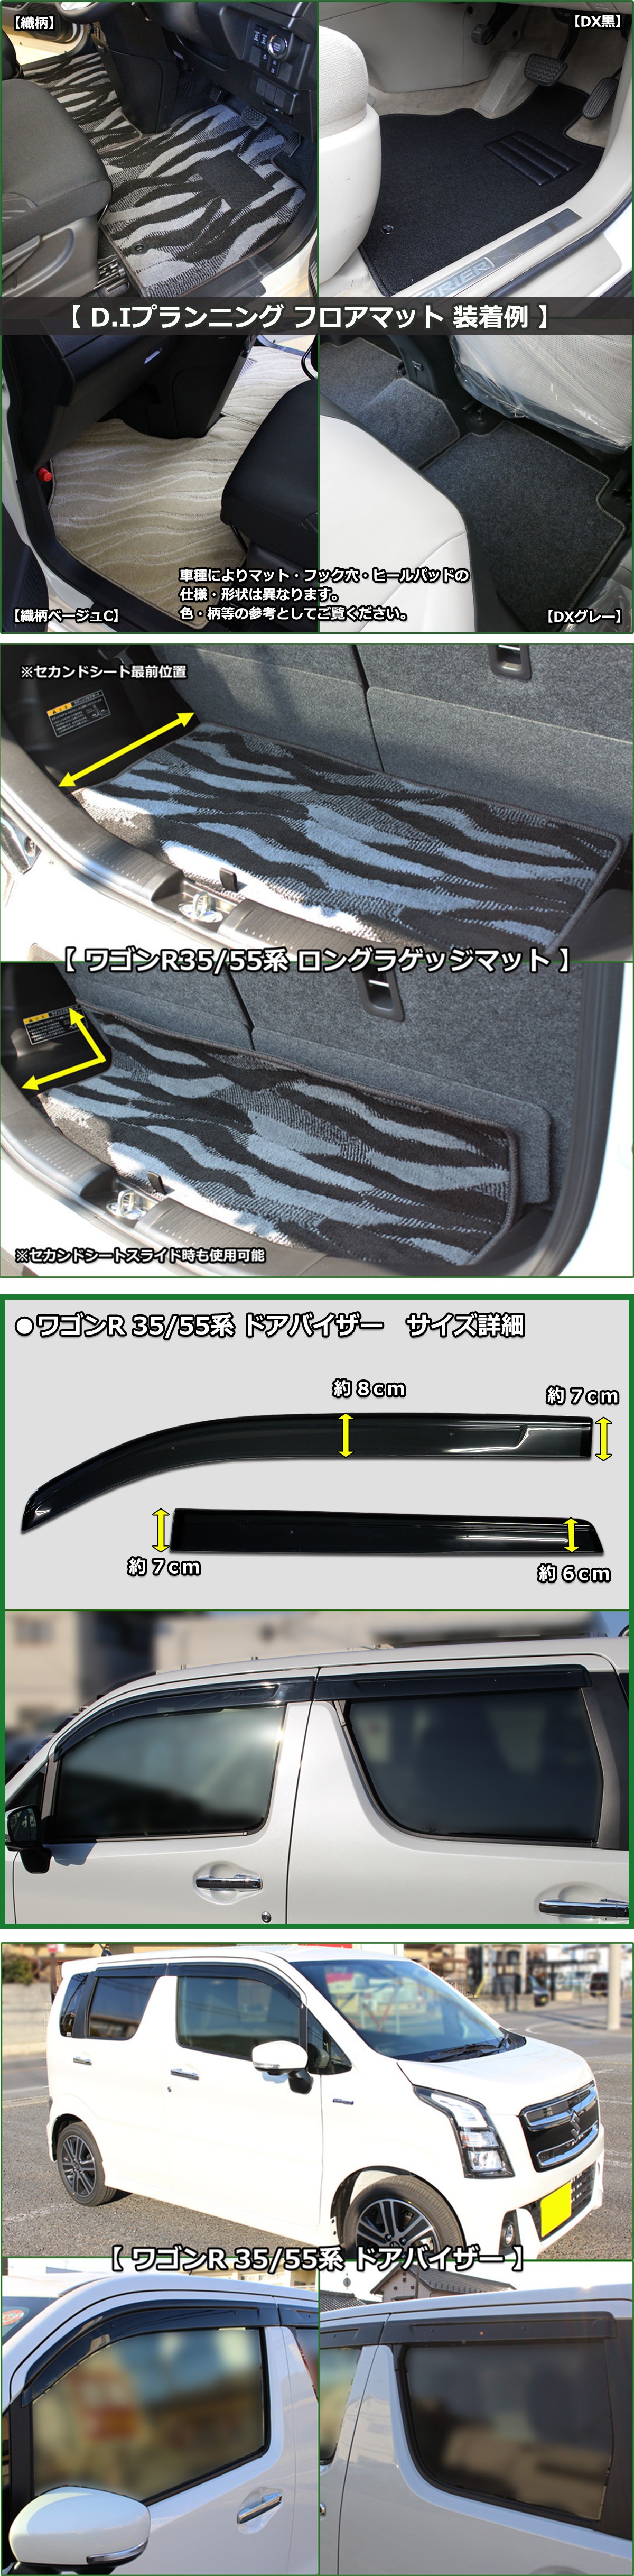 手数料安い 日産 新型 サクラ B6AW ドアバイザー サイドバイザー アクリルバイザー 自動車バイザー 社外新品 自動車パーツ カー用品 